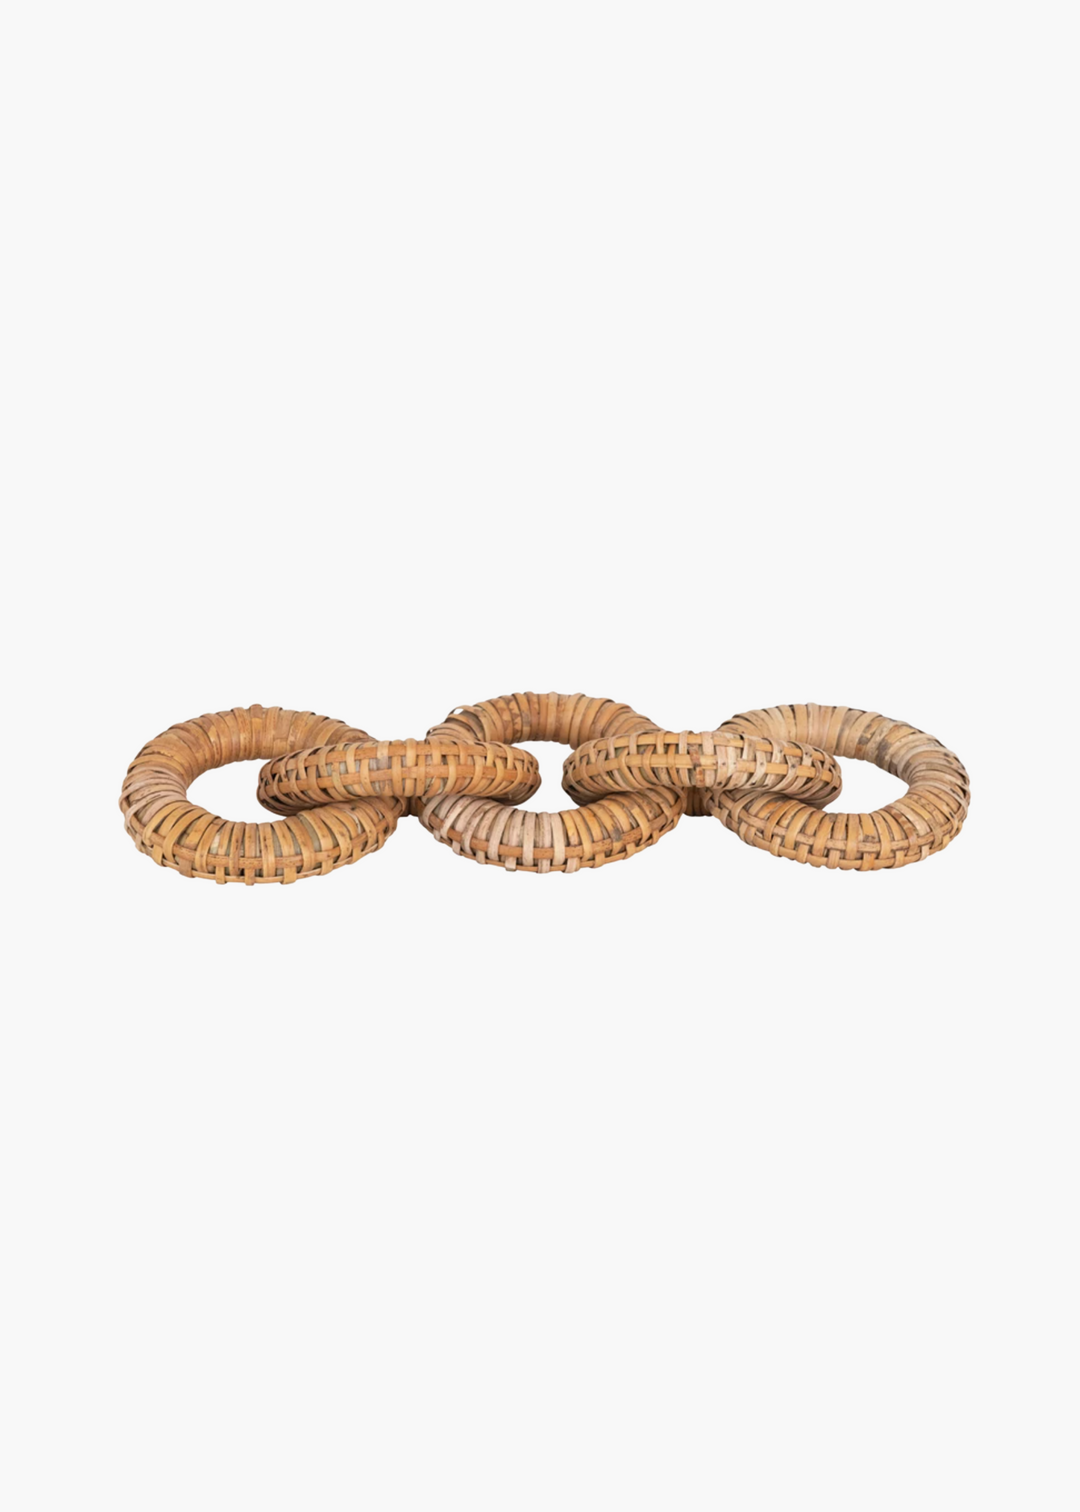 Rattan Wood Chain